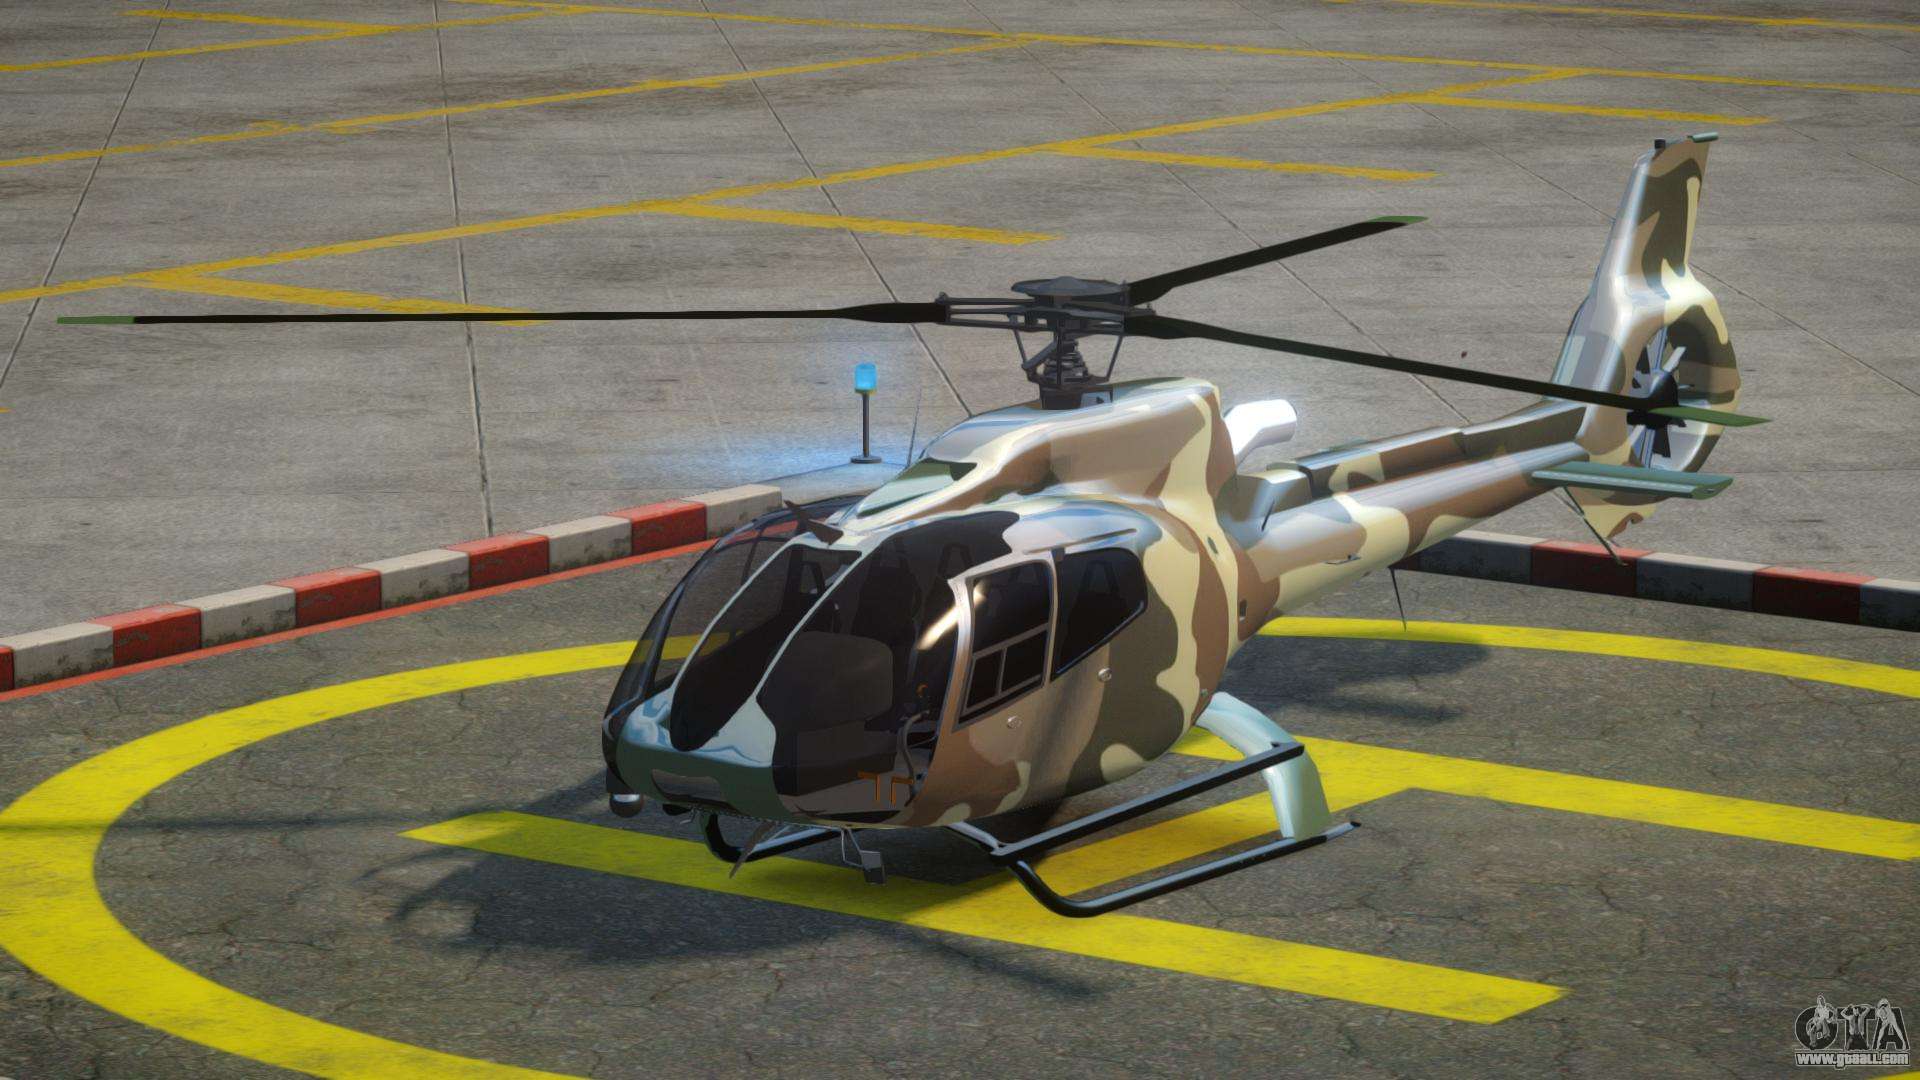 Eurocopter Ec130 Wallpapers